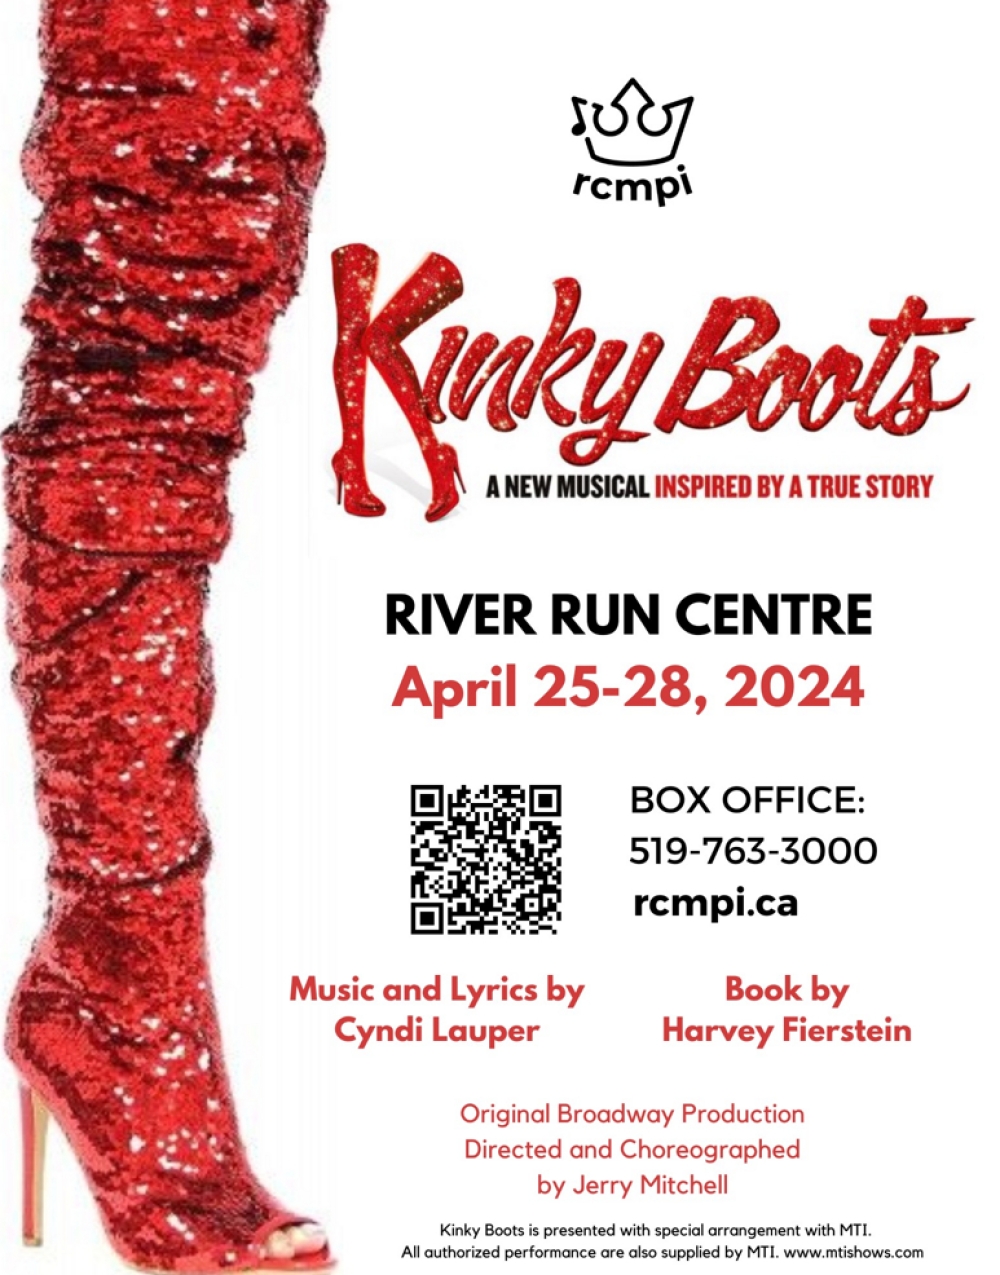 Kinky Boots at River Run Centre, Studio Theatre